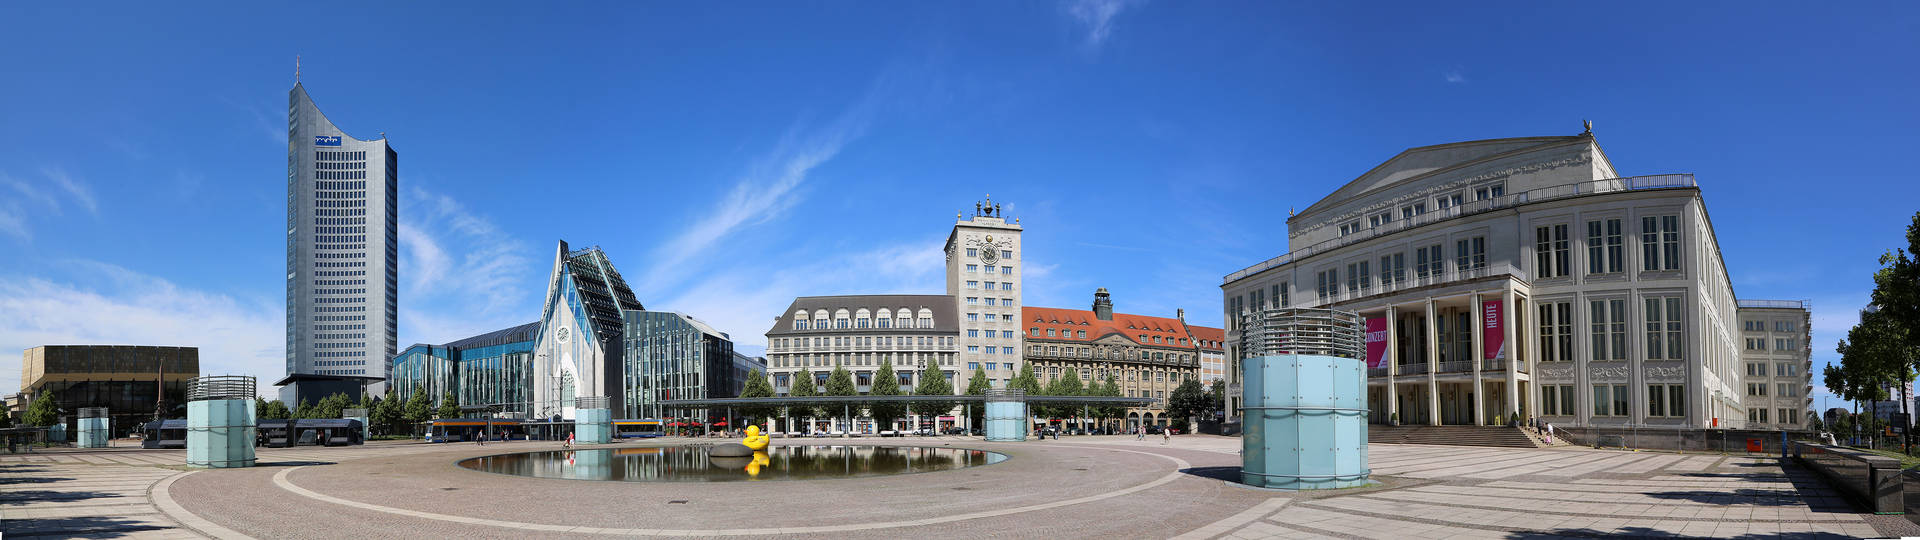 Augustusplatz in Leipzig - Hyperion Hotel Leipzig - Offizielle Webseite